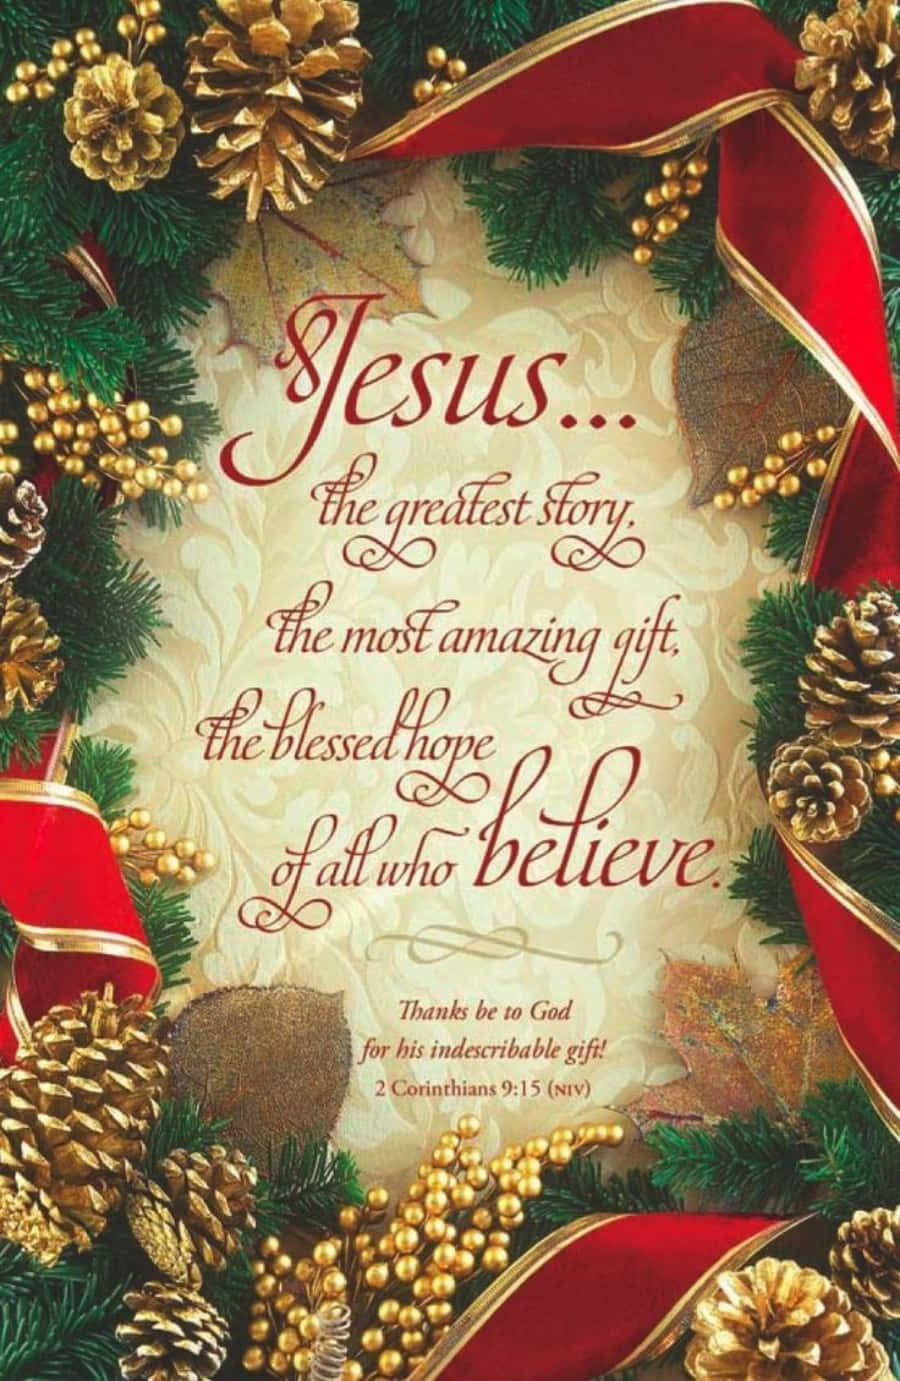 Den sande betydning af jul kan findes i Bibelen. Wallpaper